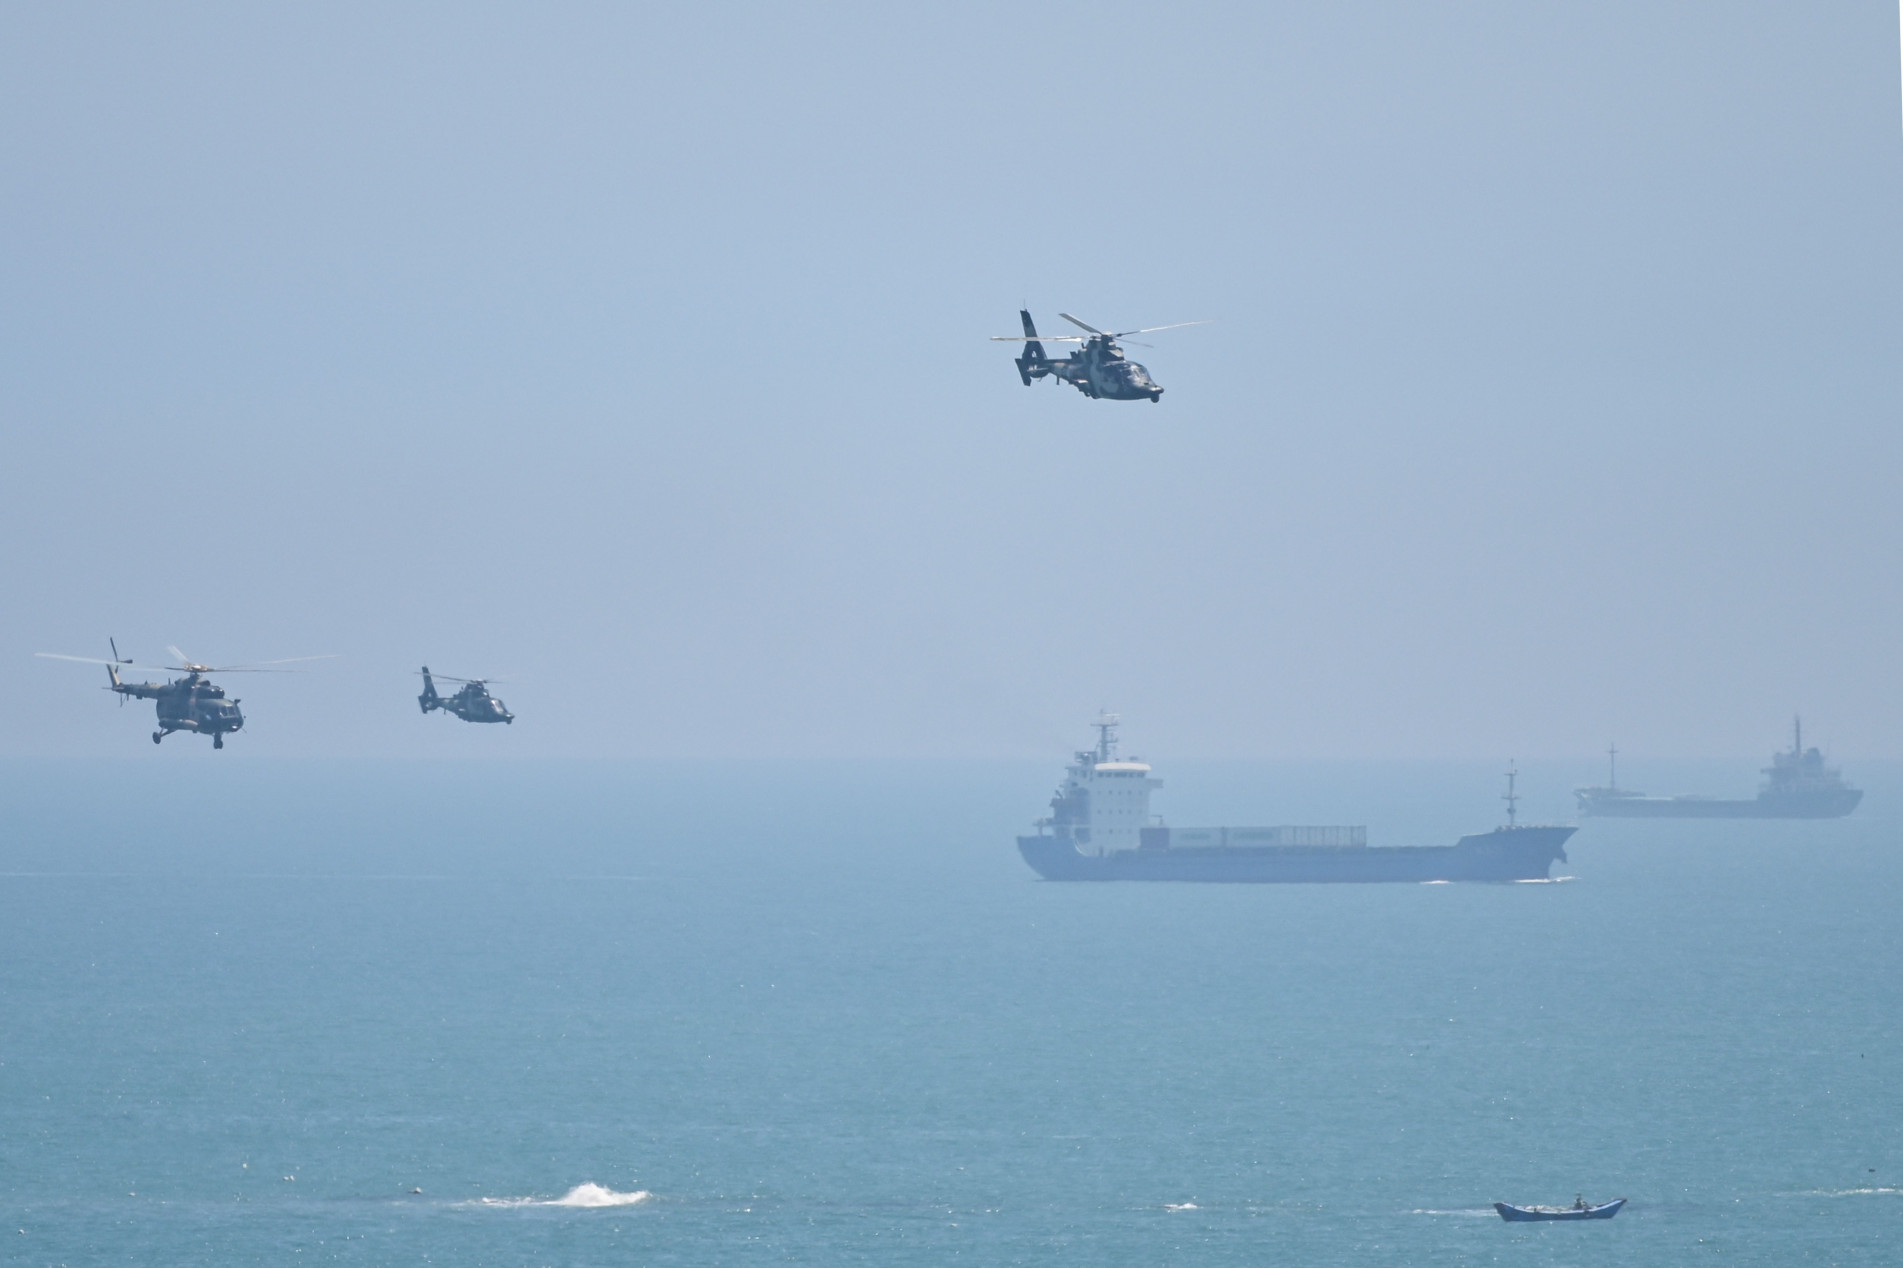 Helicópteros militares sobrevoam a ilha de Pingtan, ponto de Taiwan próximo à China continental